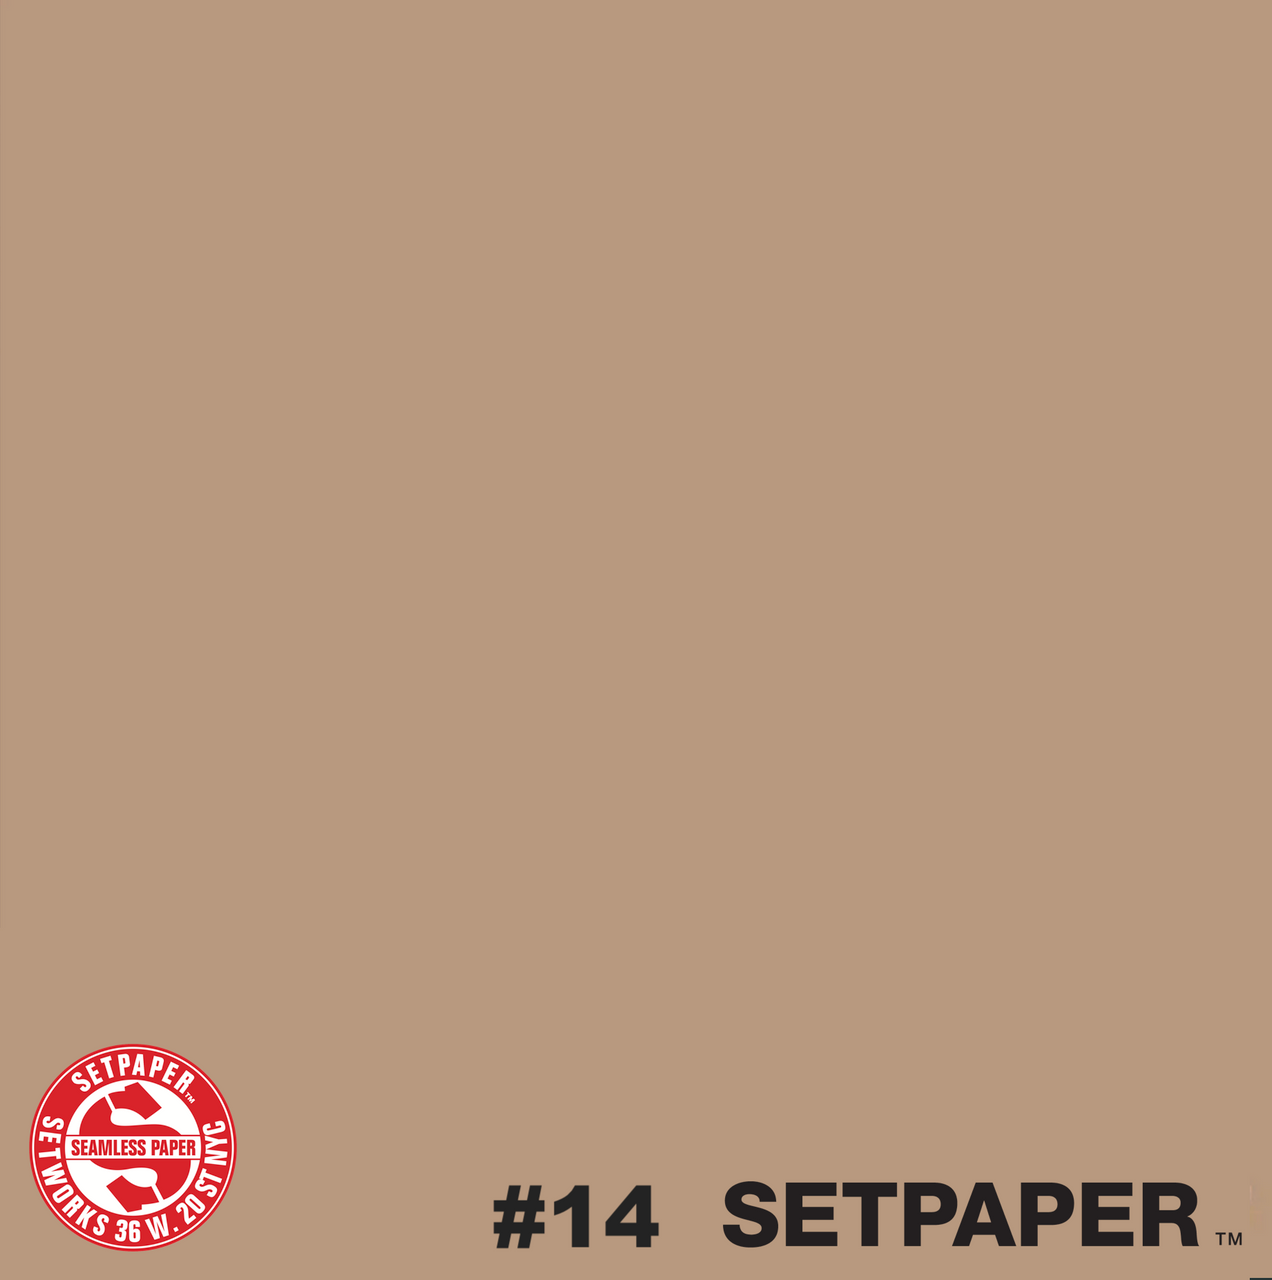 114 SETPAPER - NATURAL 53" x 36' (1.3 x 11m)